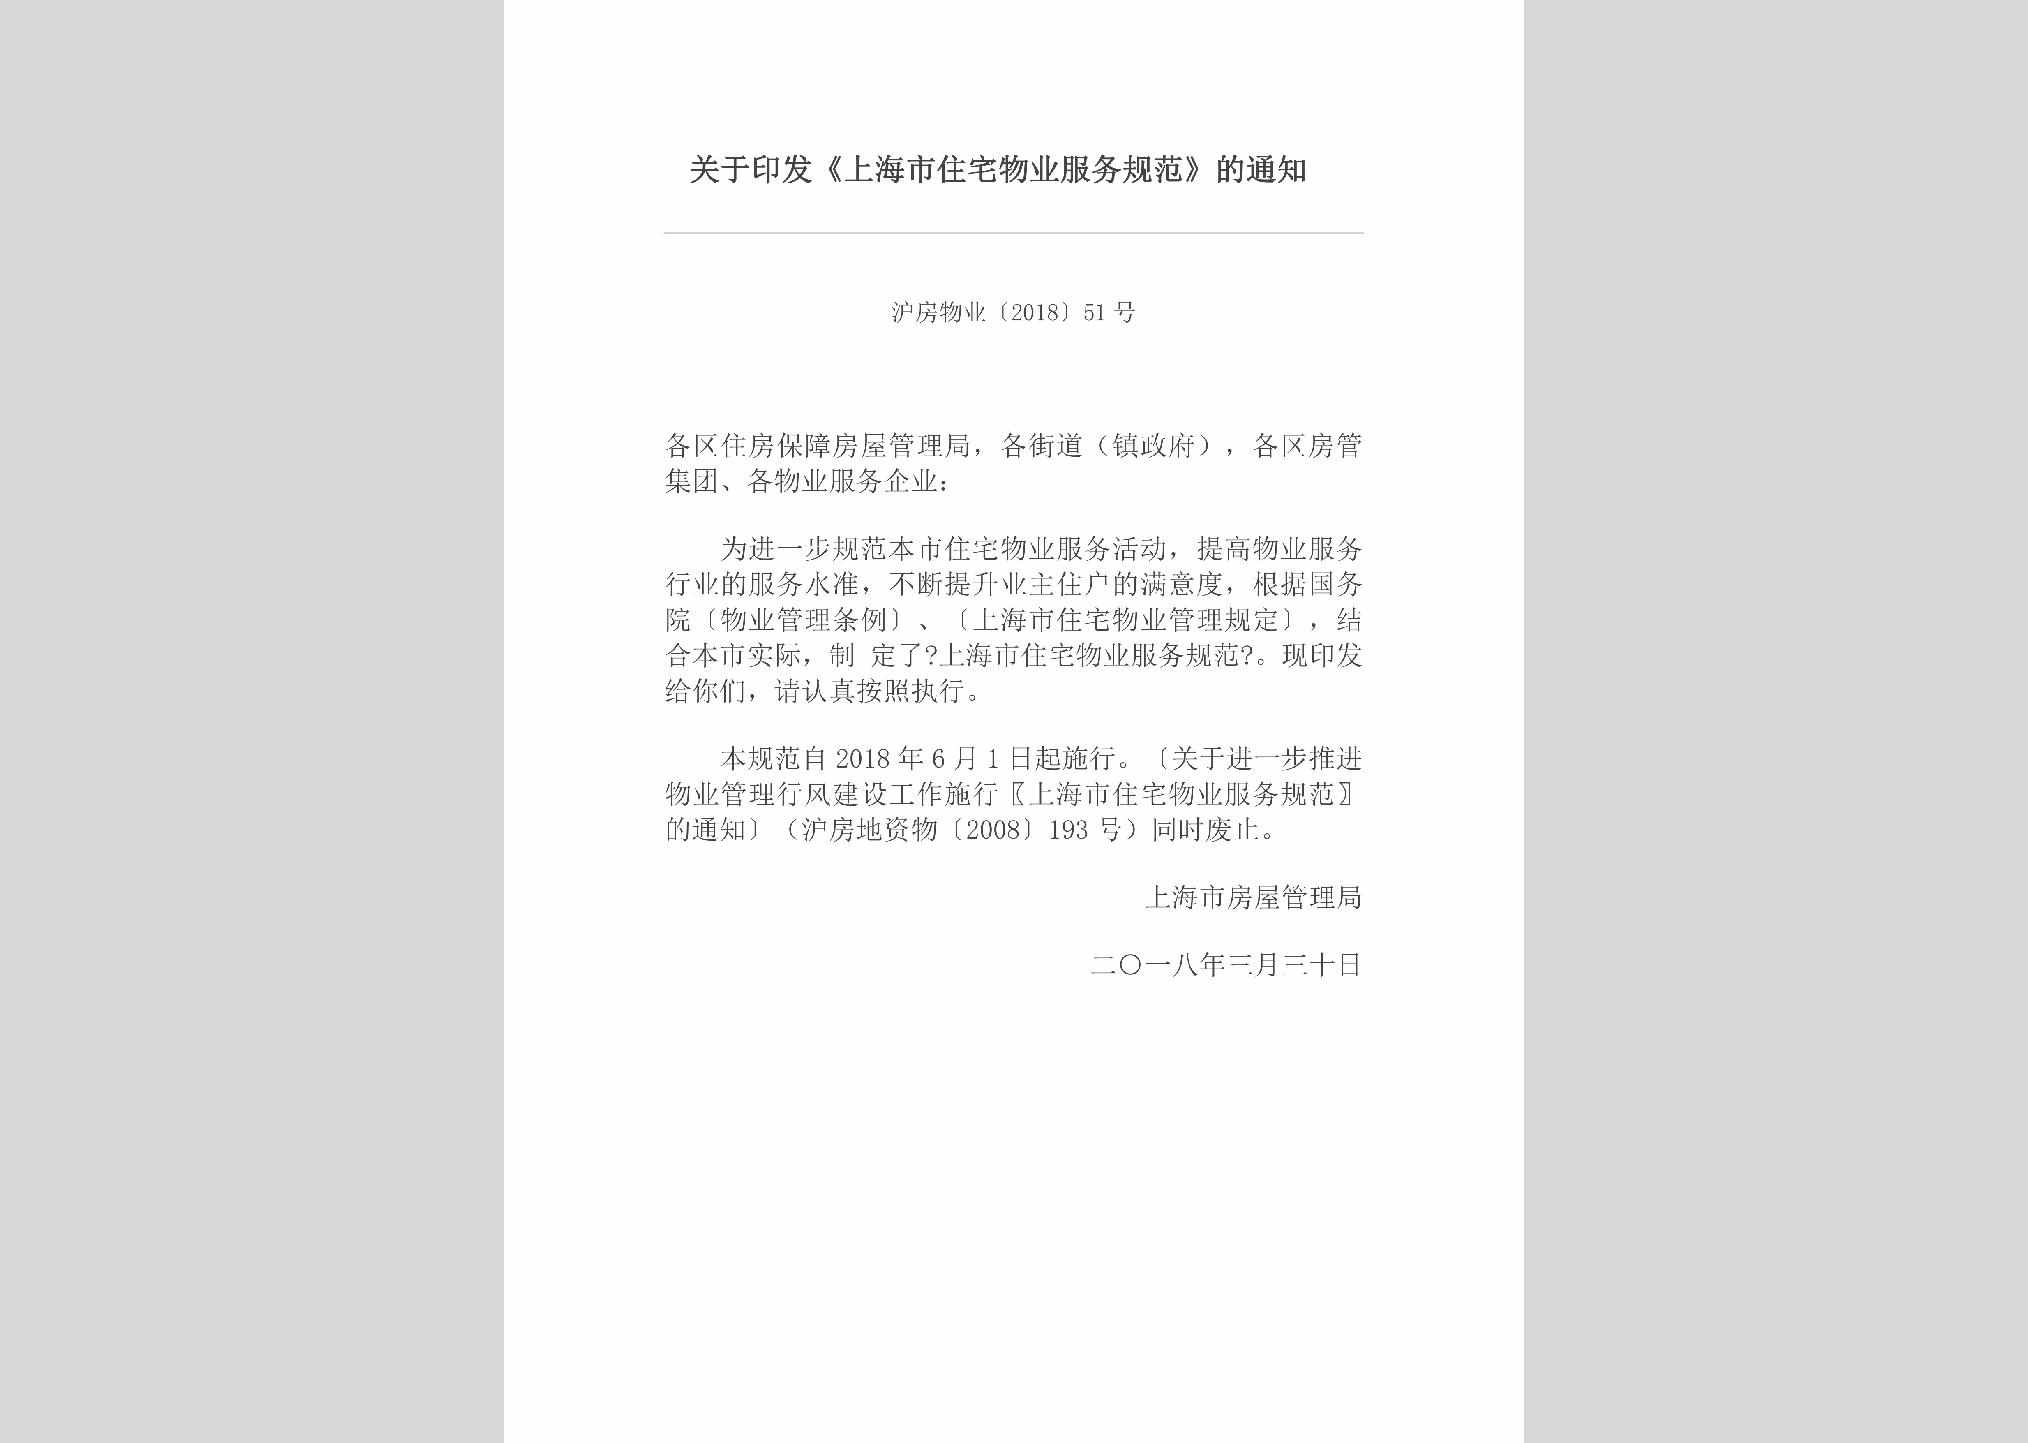 沪房物业[2018]51号：关于印发《上海市住宅物业服务规范》的通知